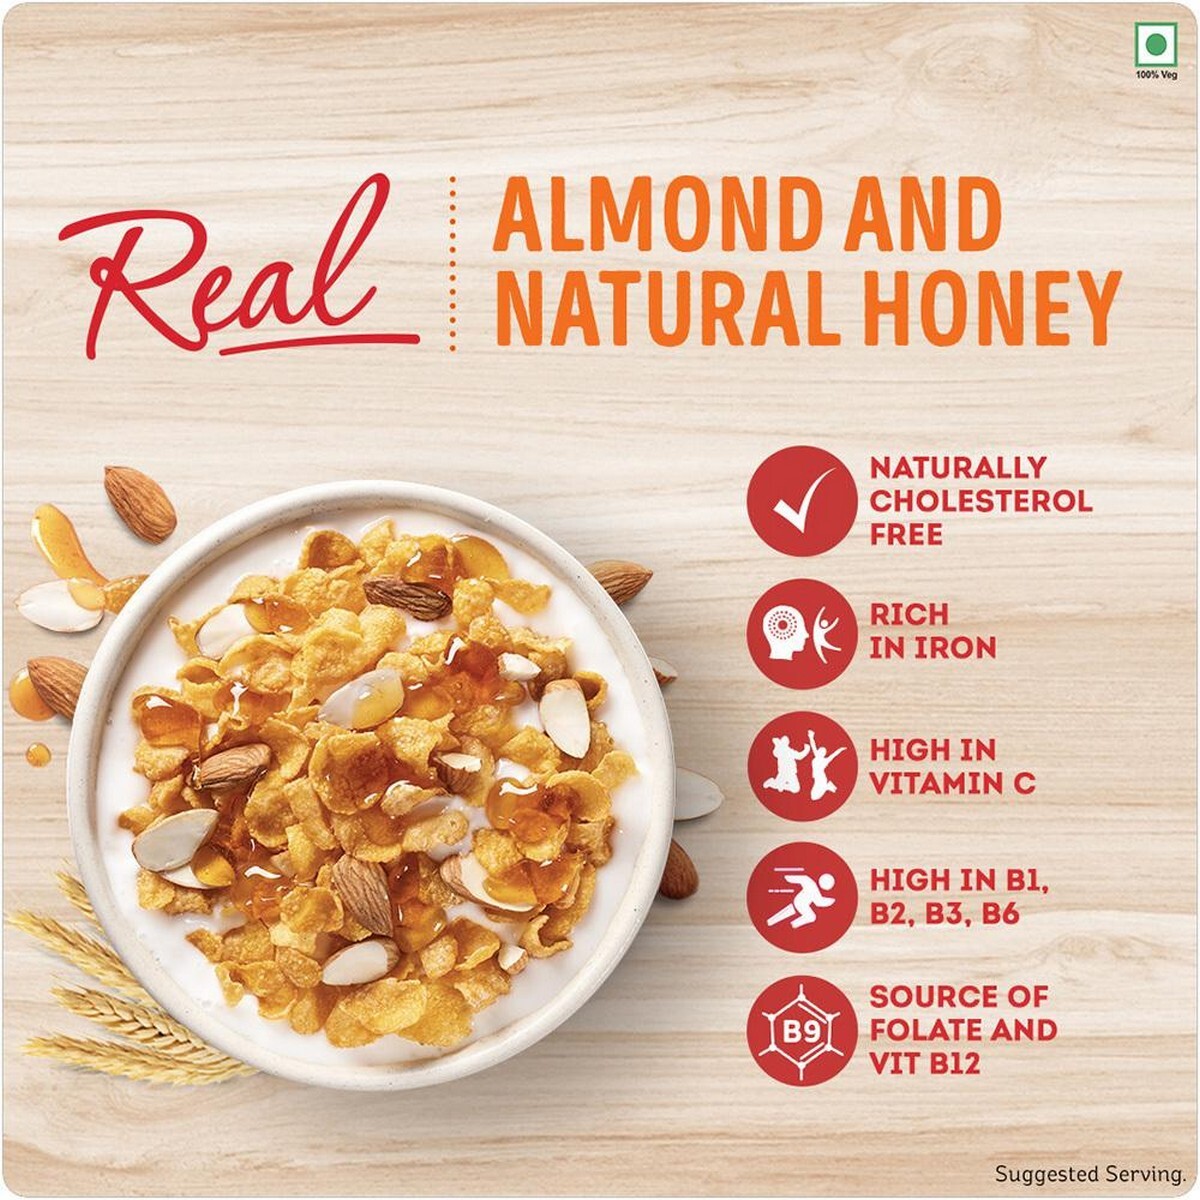 Kello Corn flakes Almond Honey 168gm